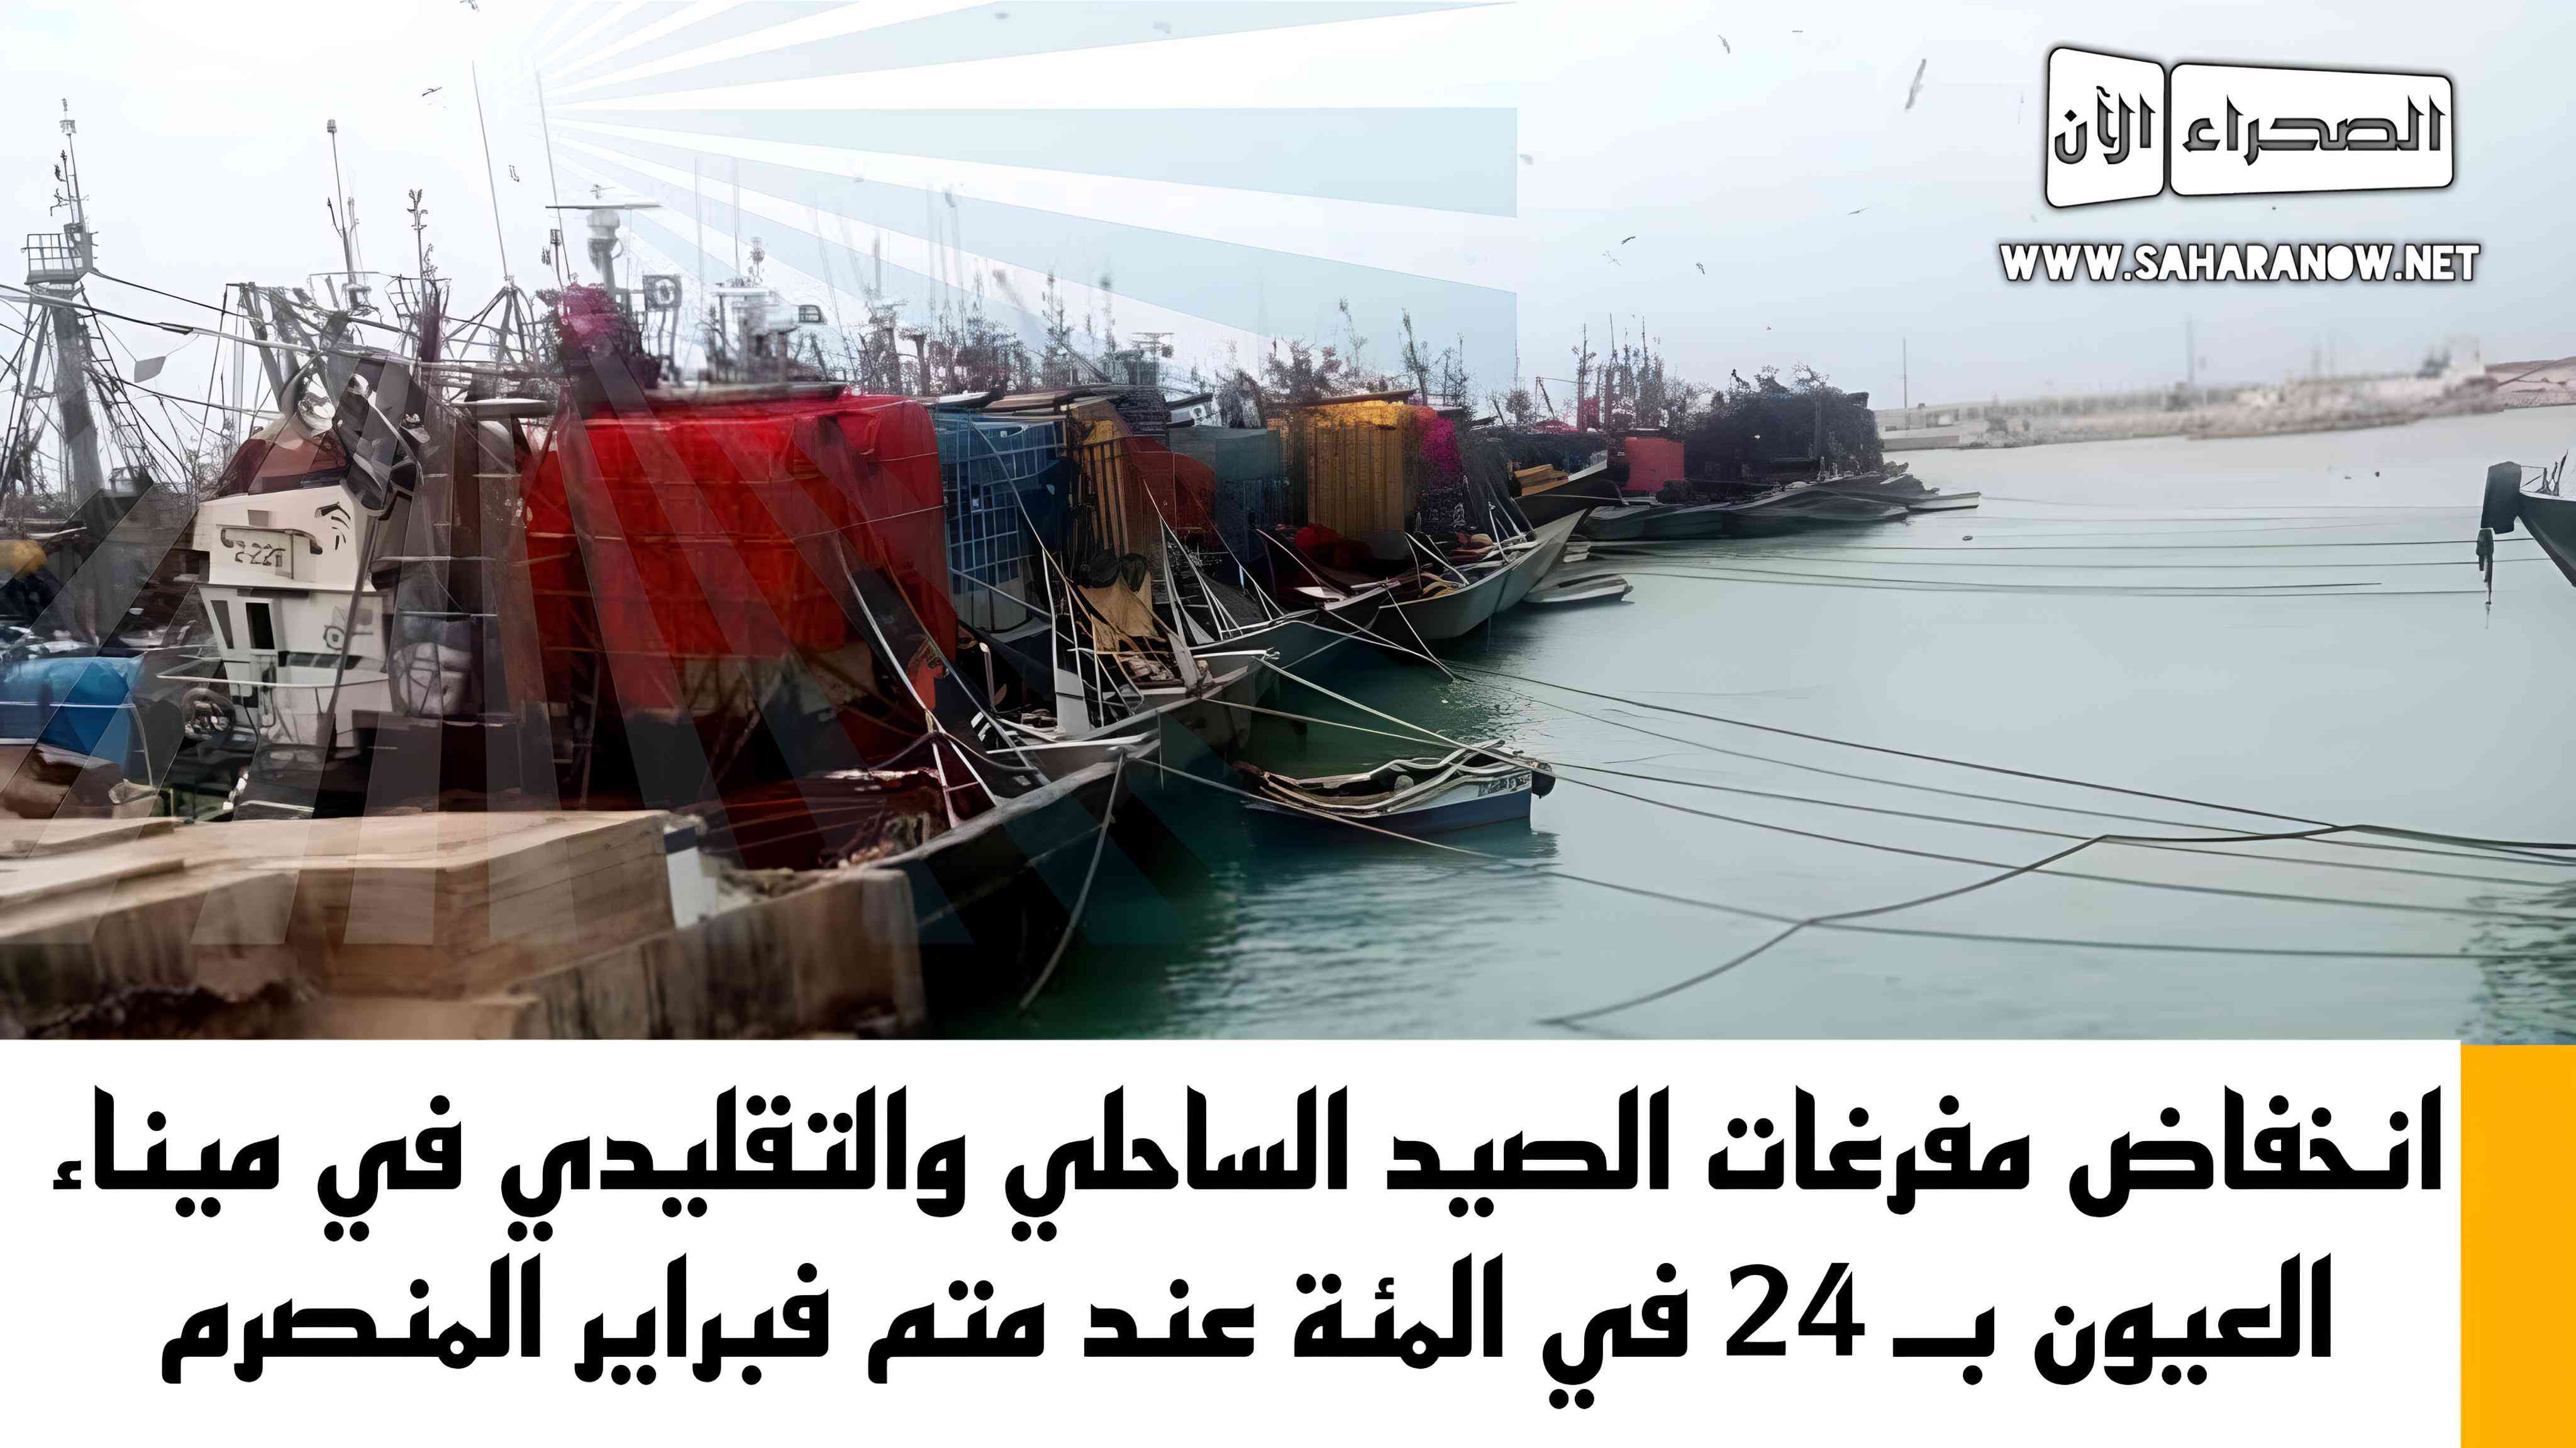 انخفاض مفرغات الصيد الساحلي والتقليدي في ميناء العيون بـ 24 في المئة عند متم فبراير المنصرم